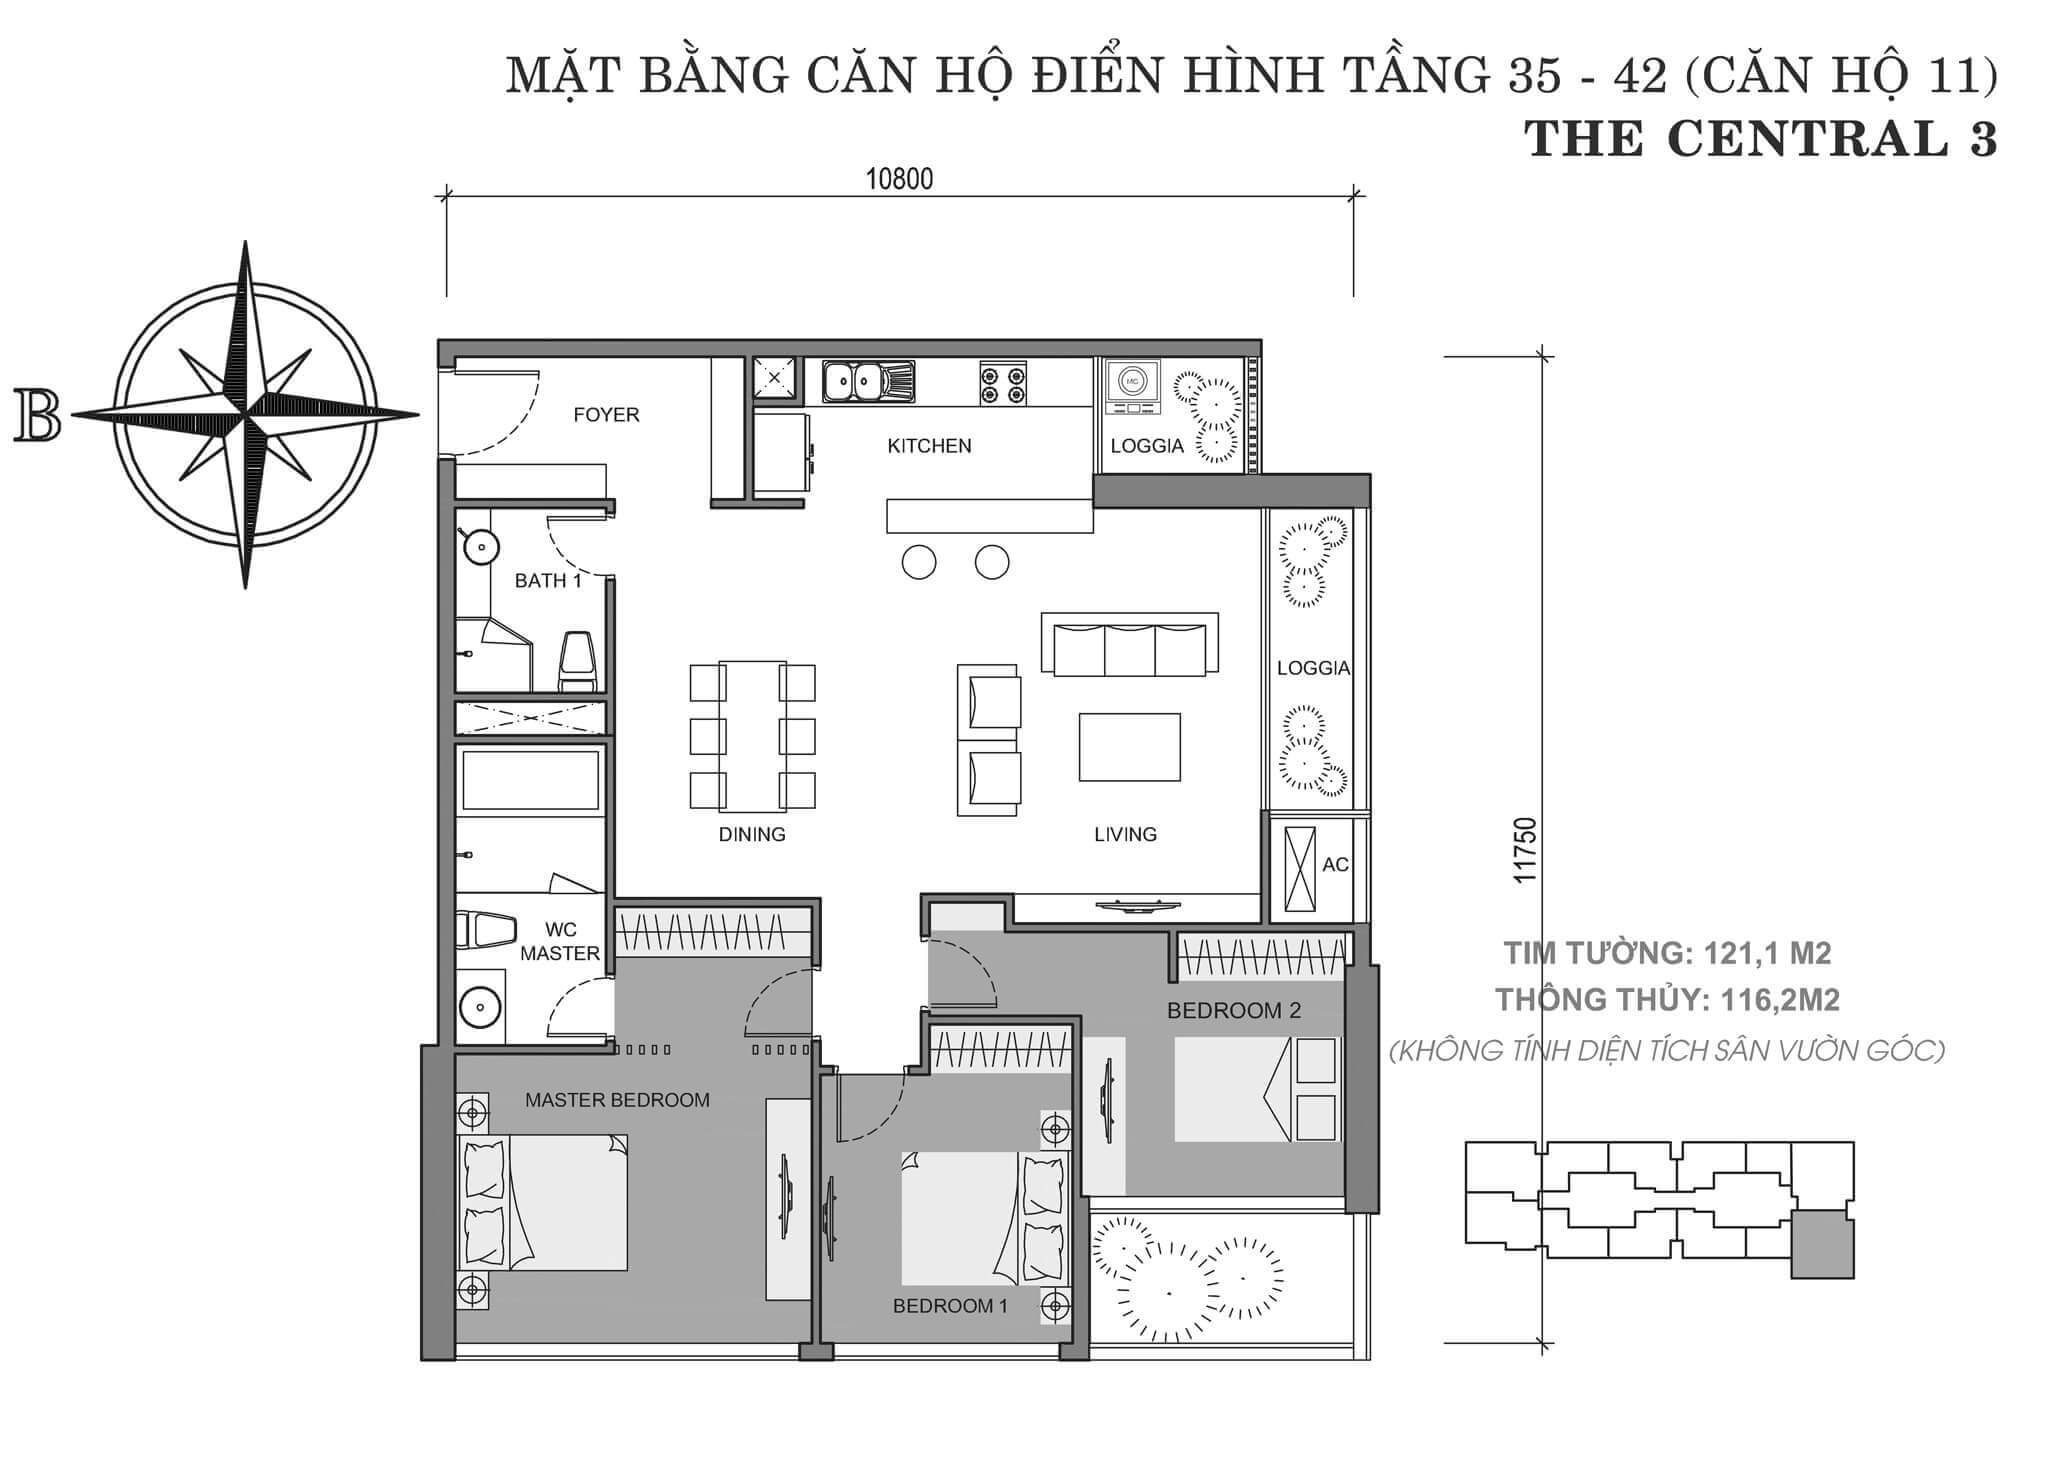 layout căn hộ số 11 tòa Central 3 tầng 35-42